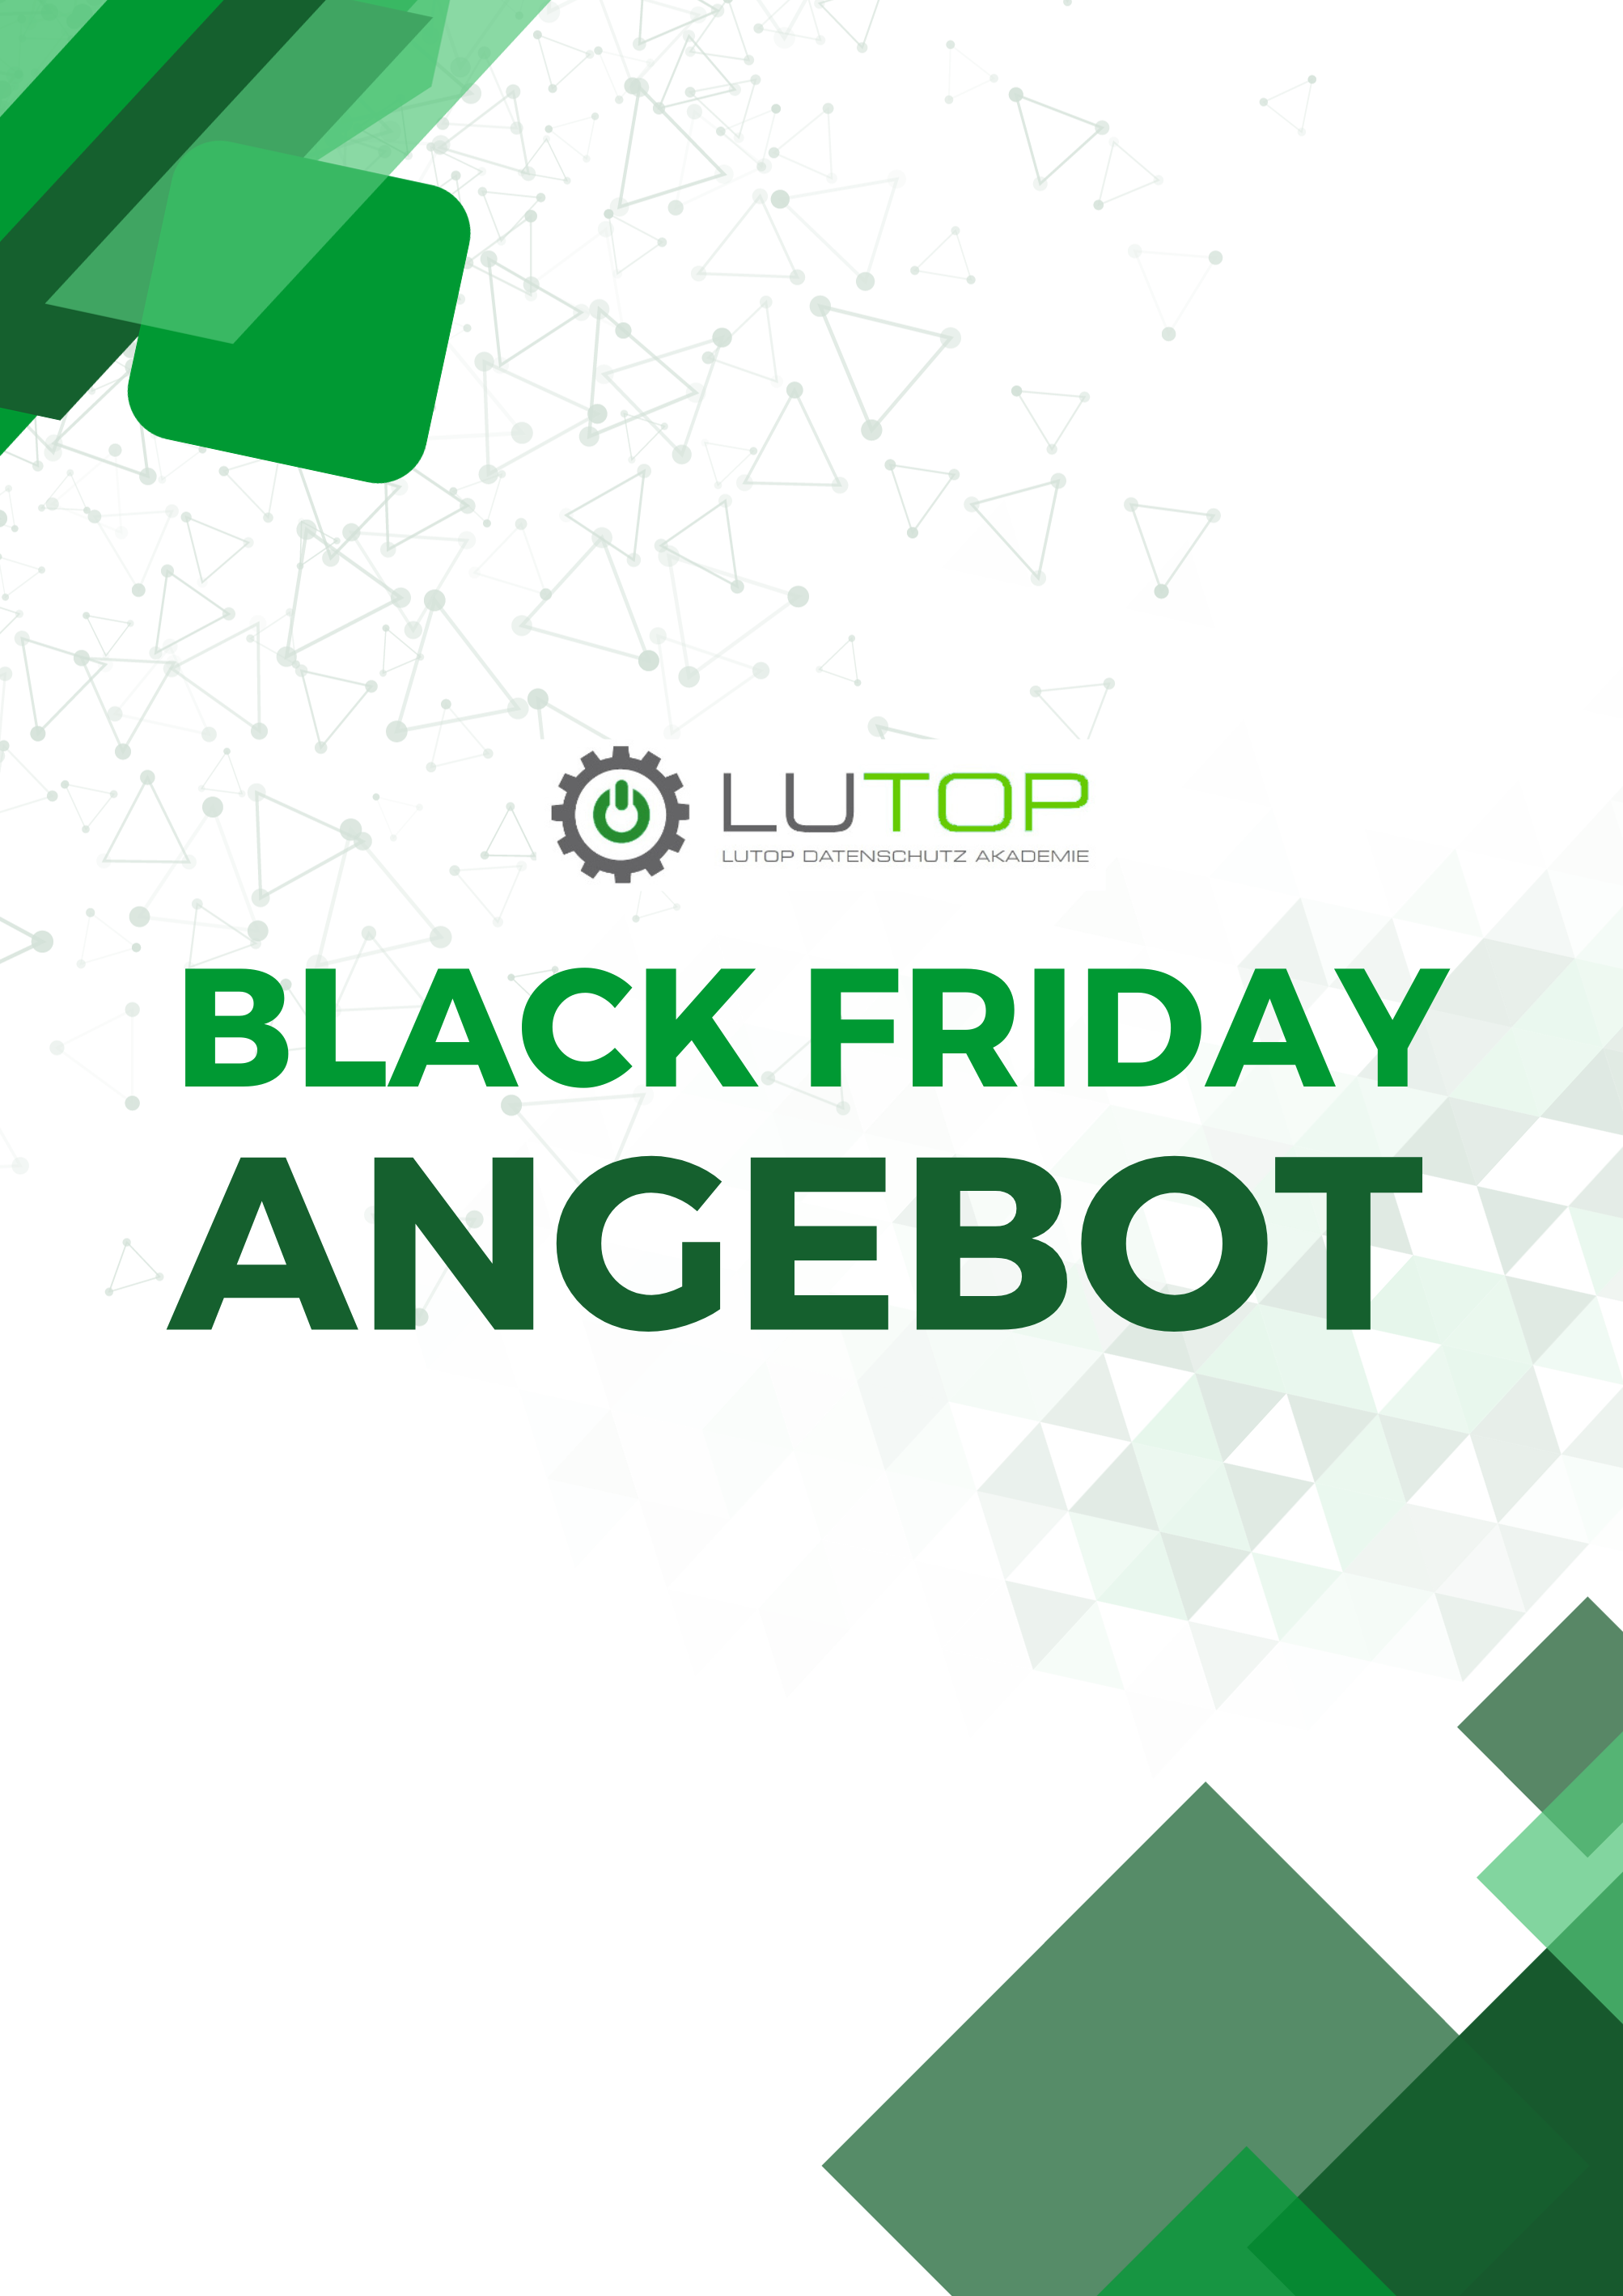 Das Black Friday Angebot der LUTOP Datenschutz Akademie